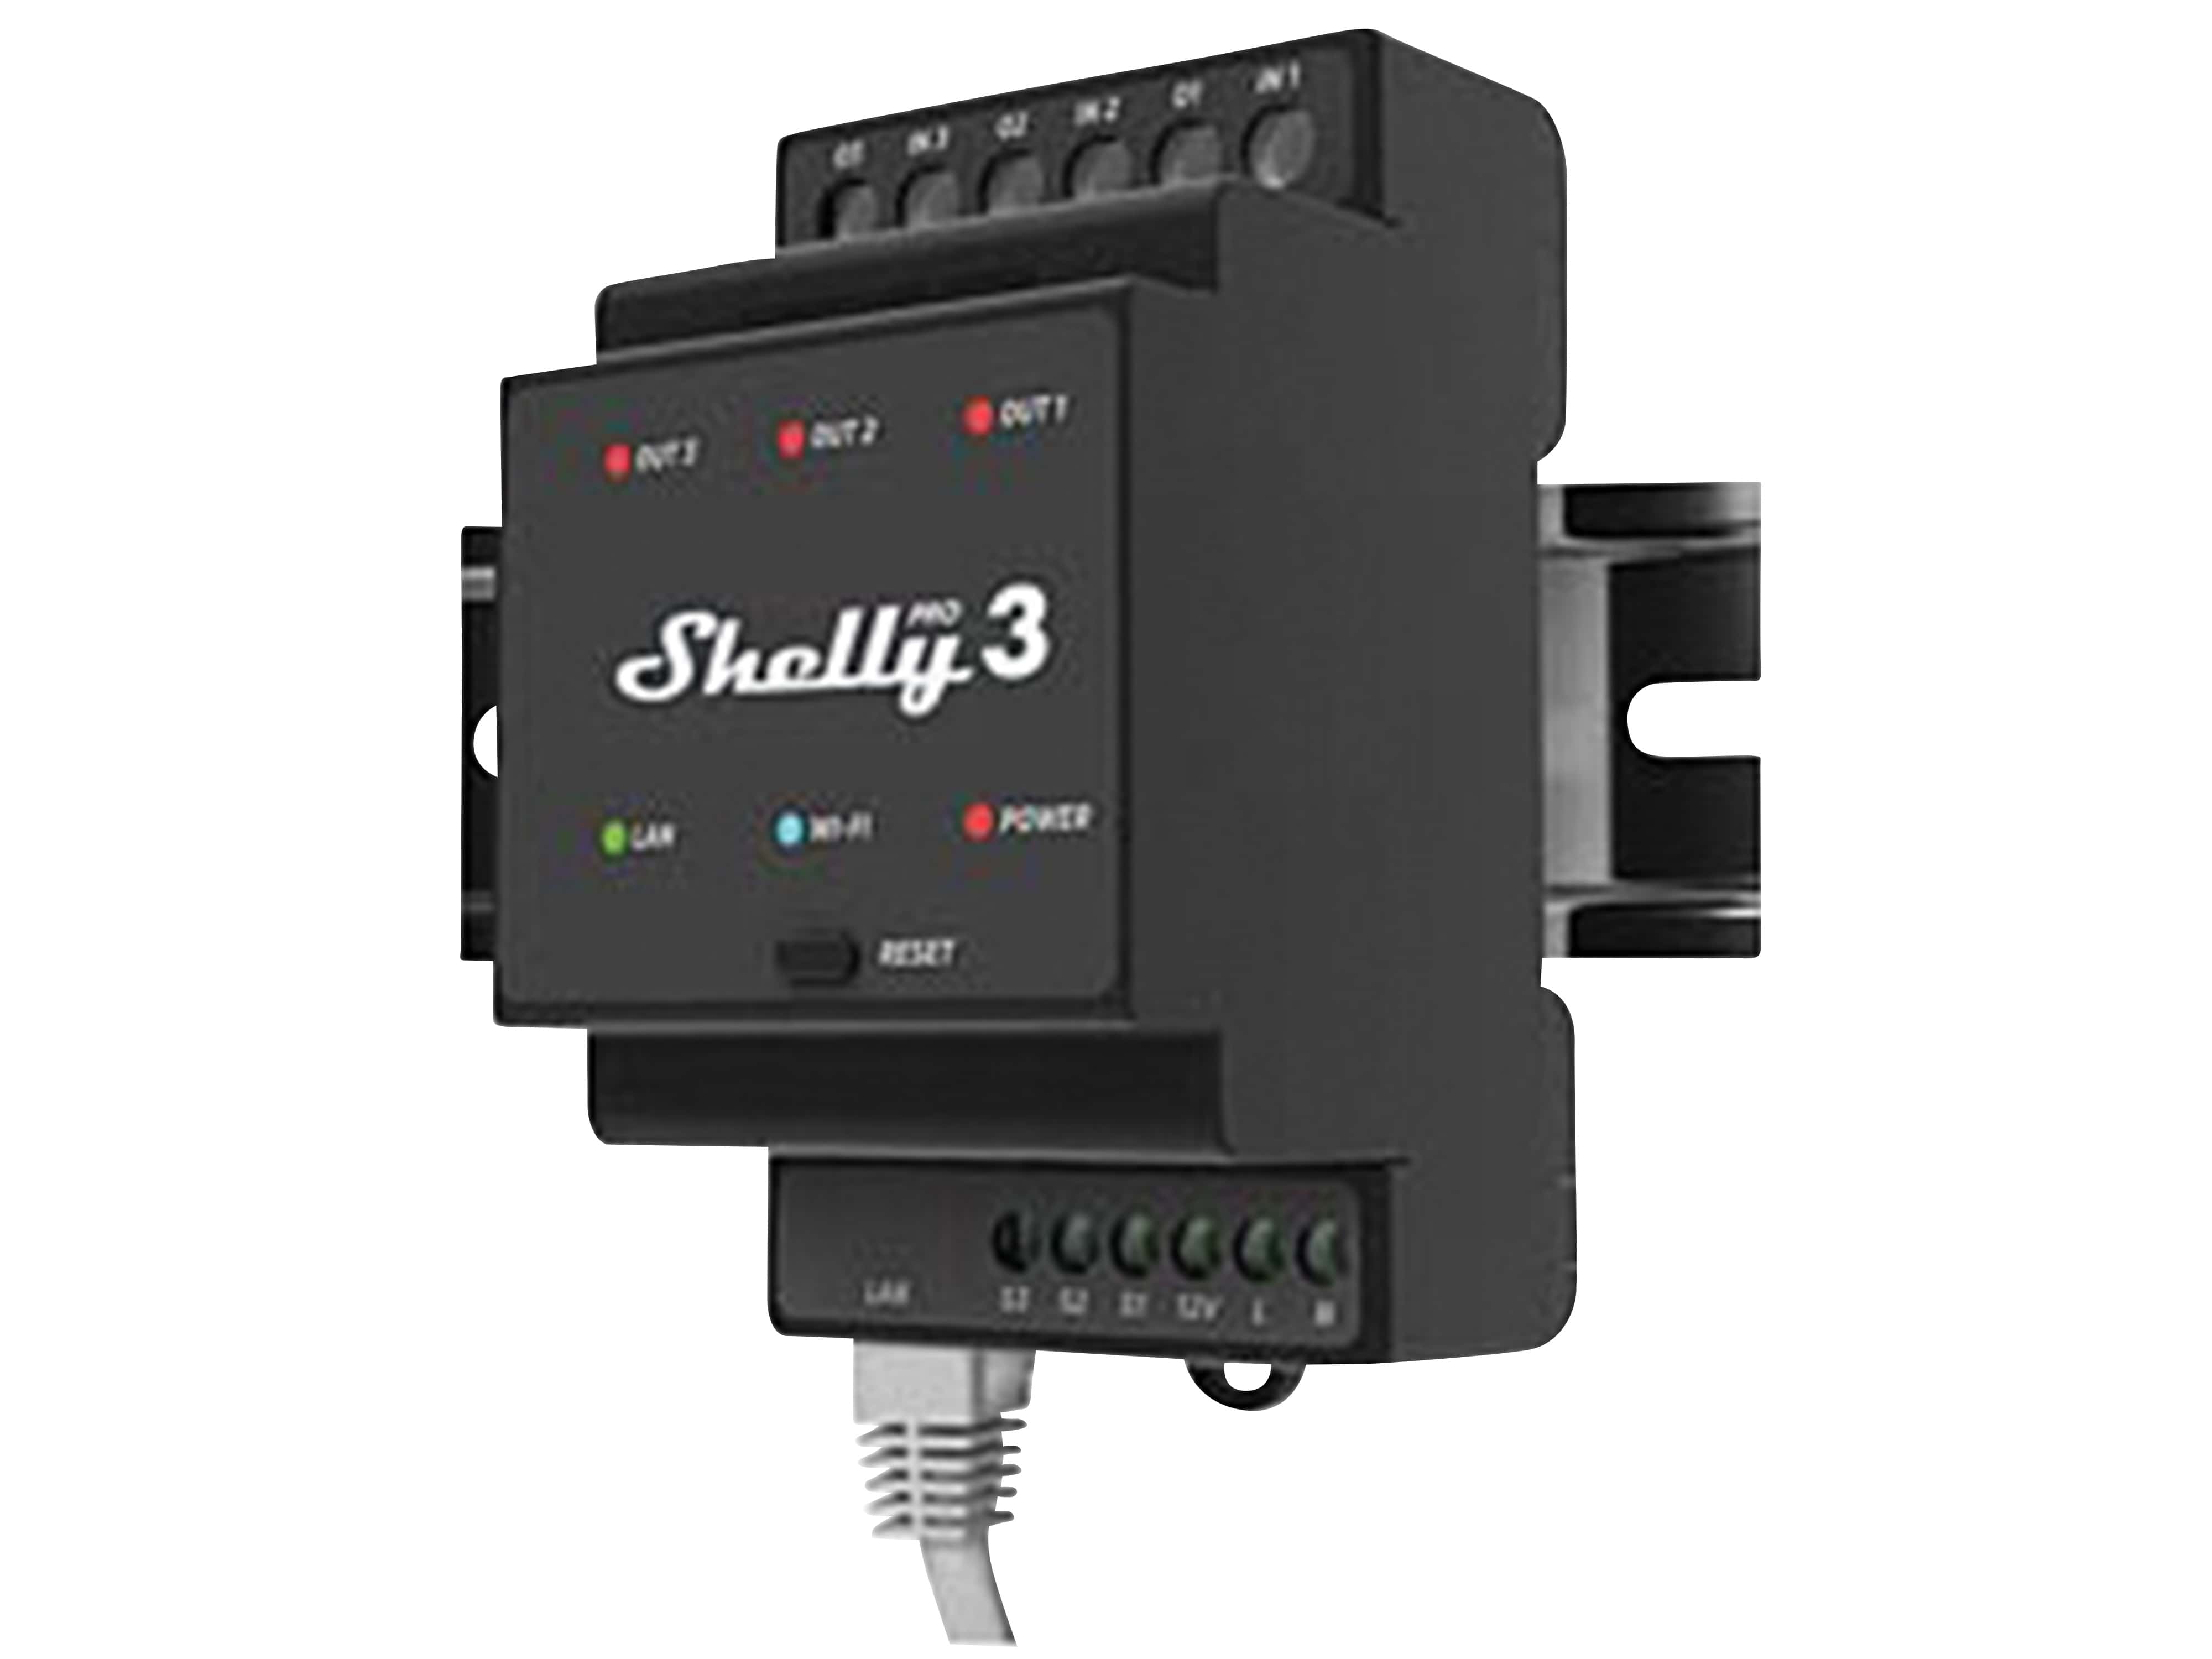 SHELLY WLAN & LAN Schaltaktor Pro 3, 3x 16 A, Bluetooth